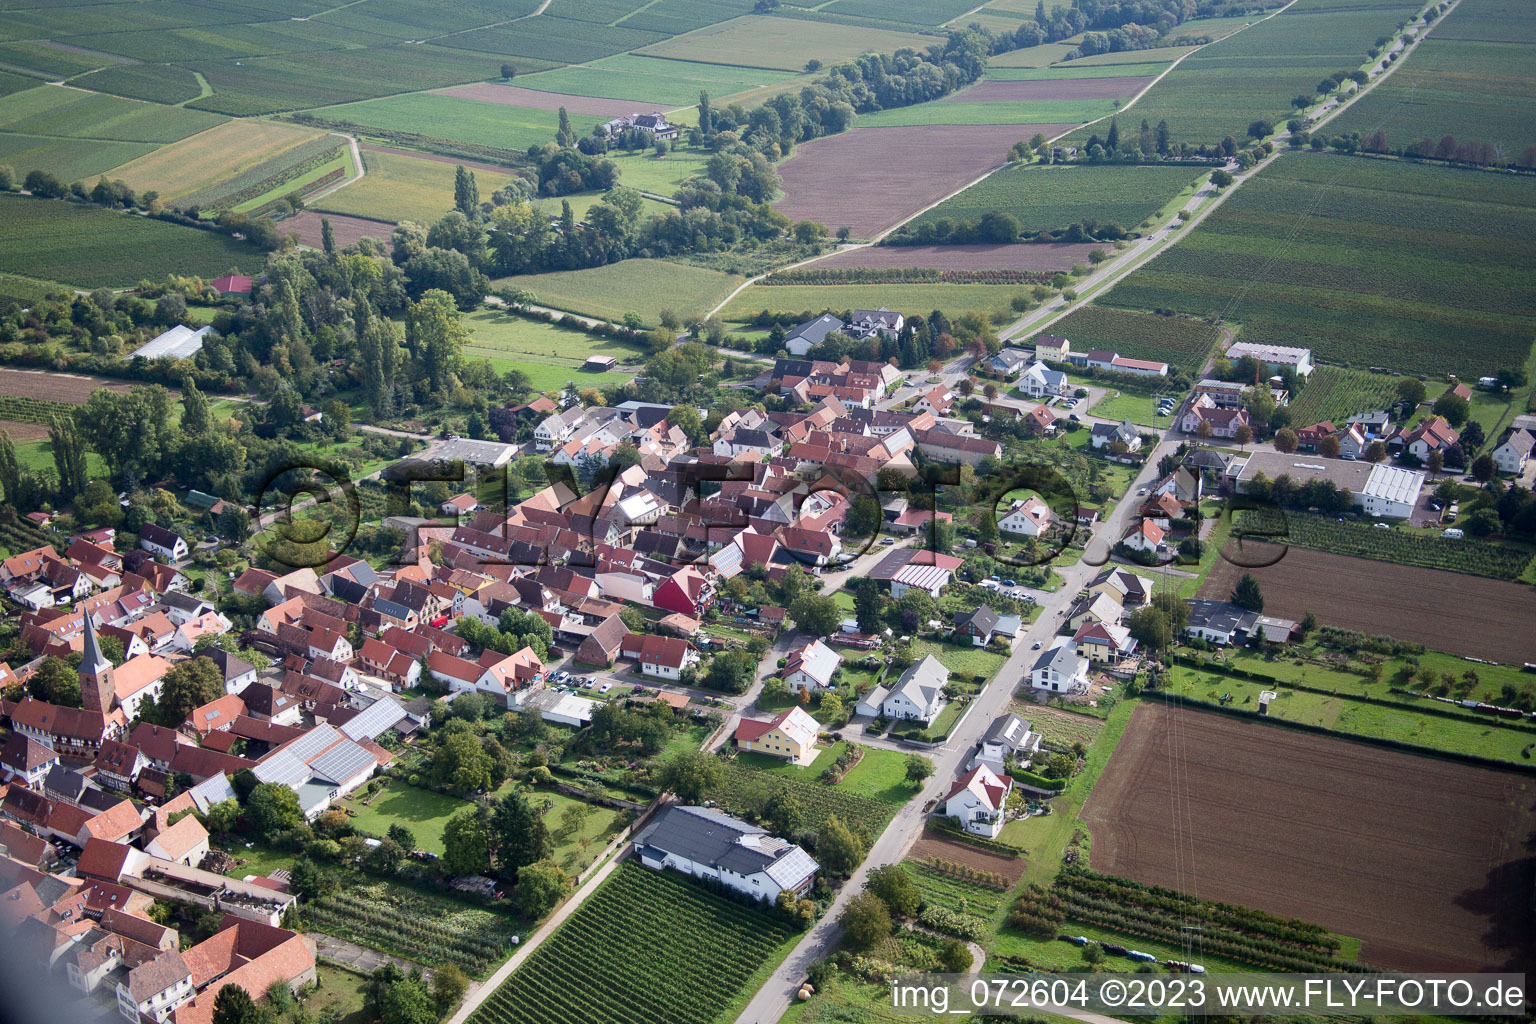 Photographie aérienne de Au jardin paroissial à le quartier Heuchelheim in Heuchelheim-Klingen dans le département Rhénanie-Palatinat, Allemagne